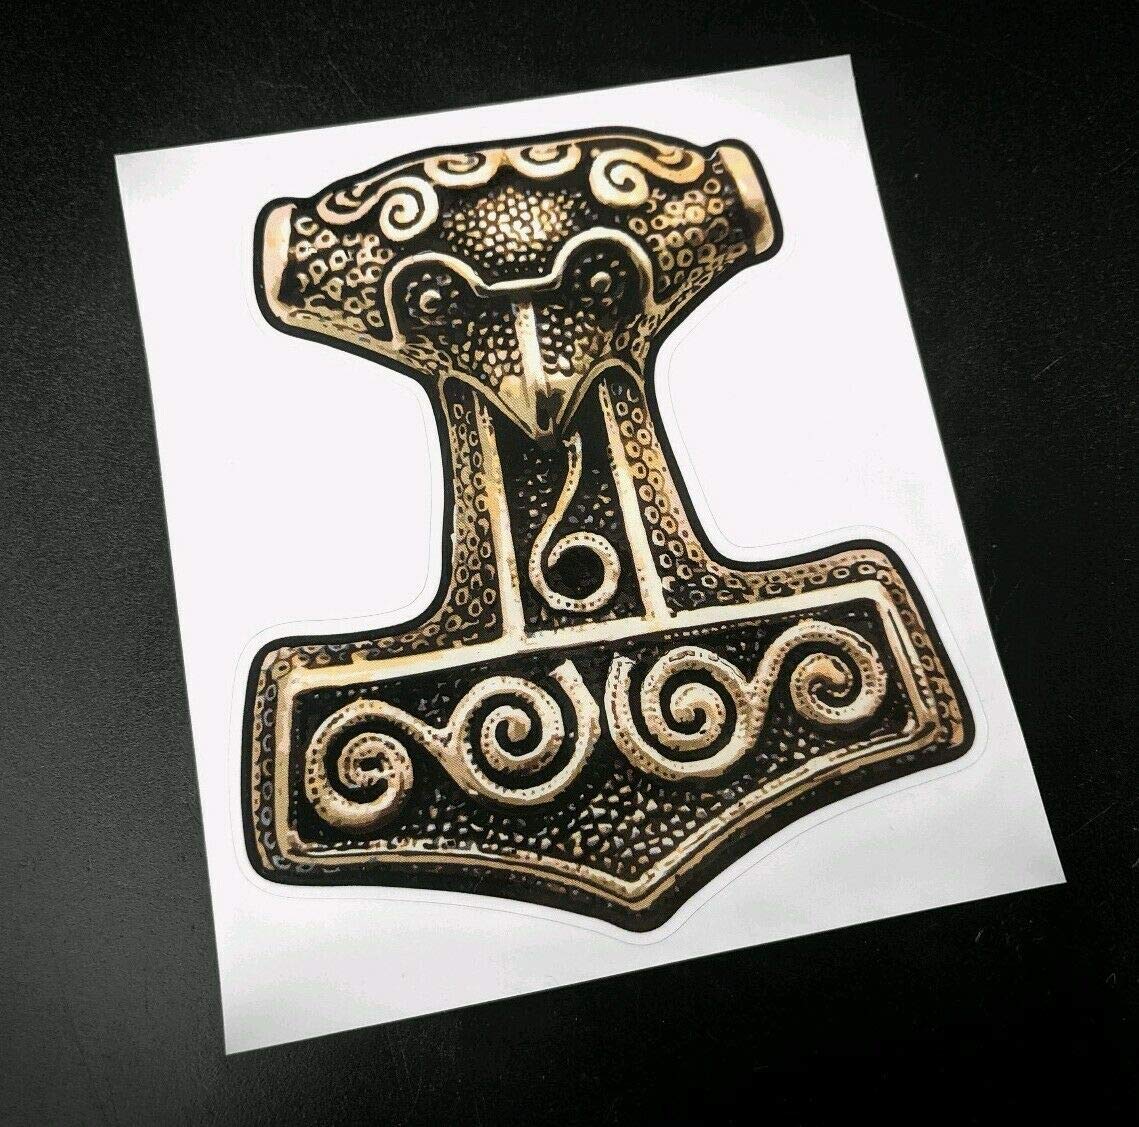 Mjolnir Hammer von Thor Wikinger Gott Vinyl Aufkleber (10cm x 8cm) von Vinyl Stickers